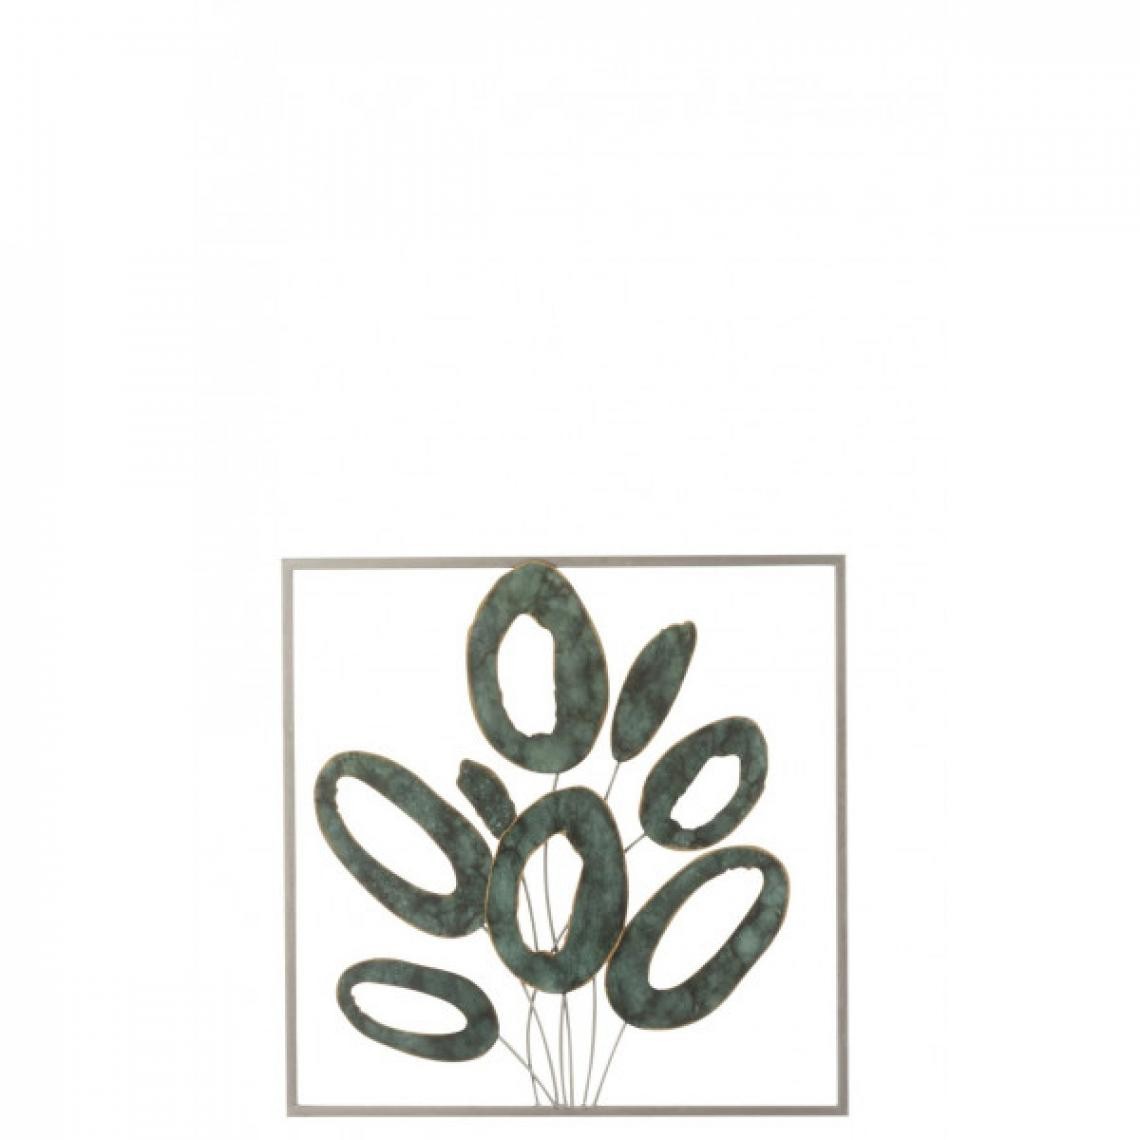 Dansmamaison - Decoration Murale Carre Ovales Ouvert Metal Or/Vert - L 50 x l 50 x H 6 cm - Objets déco